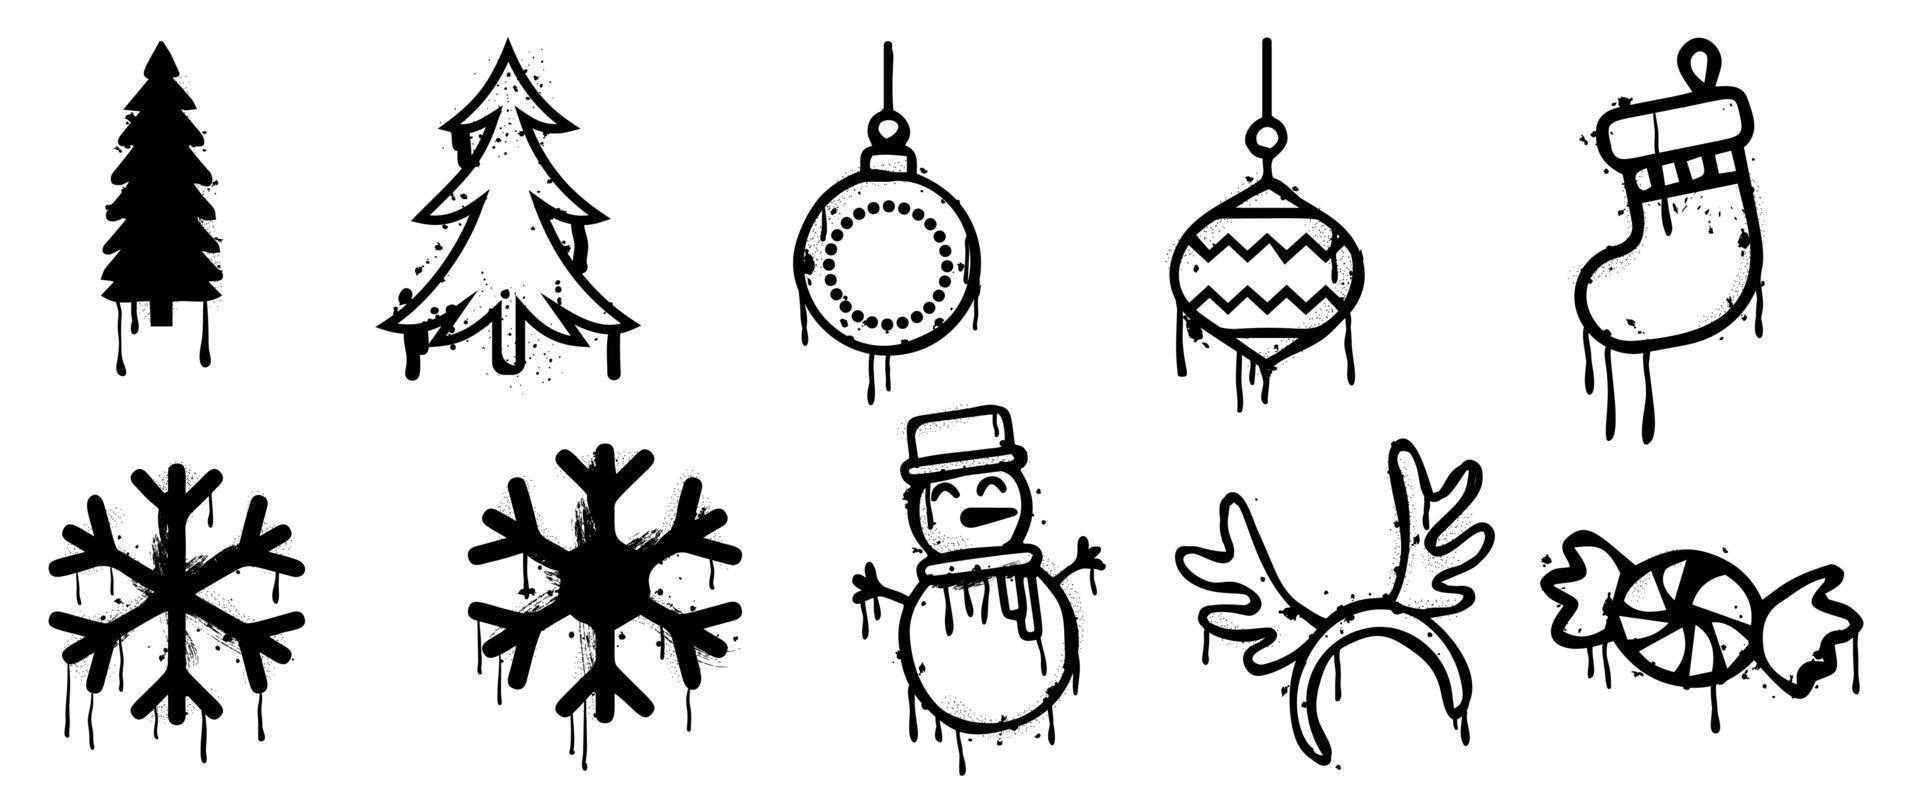 conjunto de elementos navideños vector de pintura en aerosol. graffiti, elementos grunge de pino, adorno, copo de nieve, muñeco de nieve, calcetín, caramelo sobre fondo blanco. ilustración de diseño para decoración, tarjeta, pegatina.